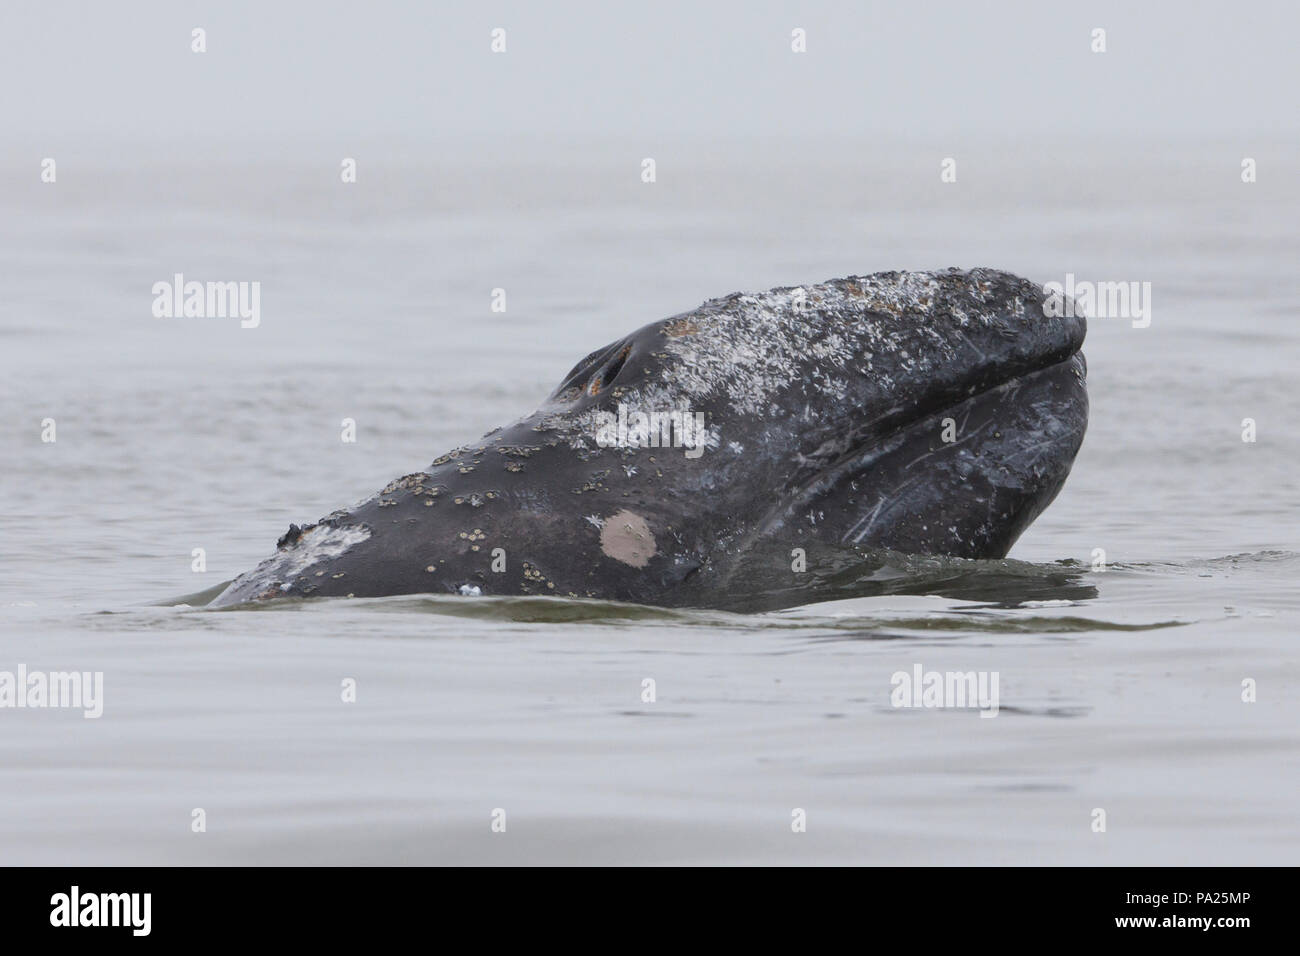 La baleine grise du Pacifique ouest, près de l'île de Sakhaline, en Russie Banque D'Images